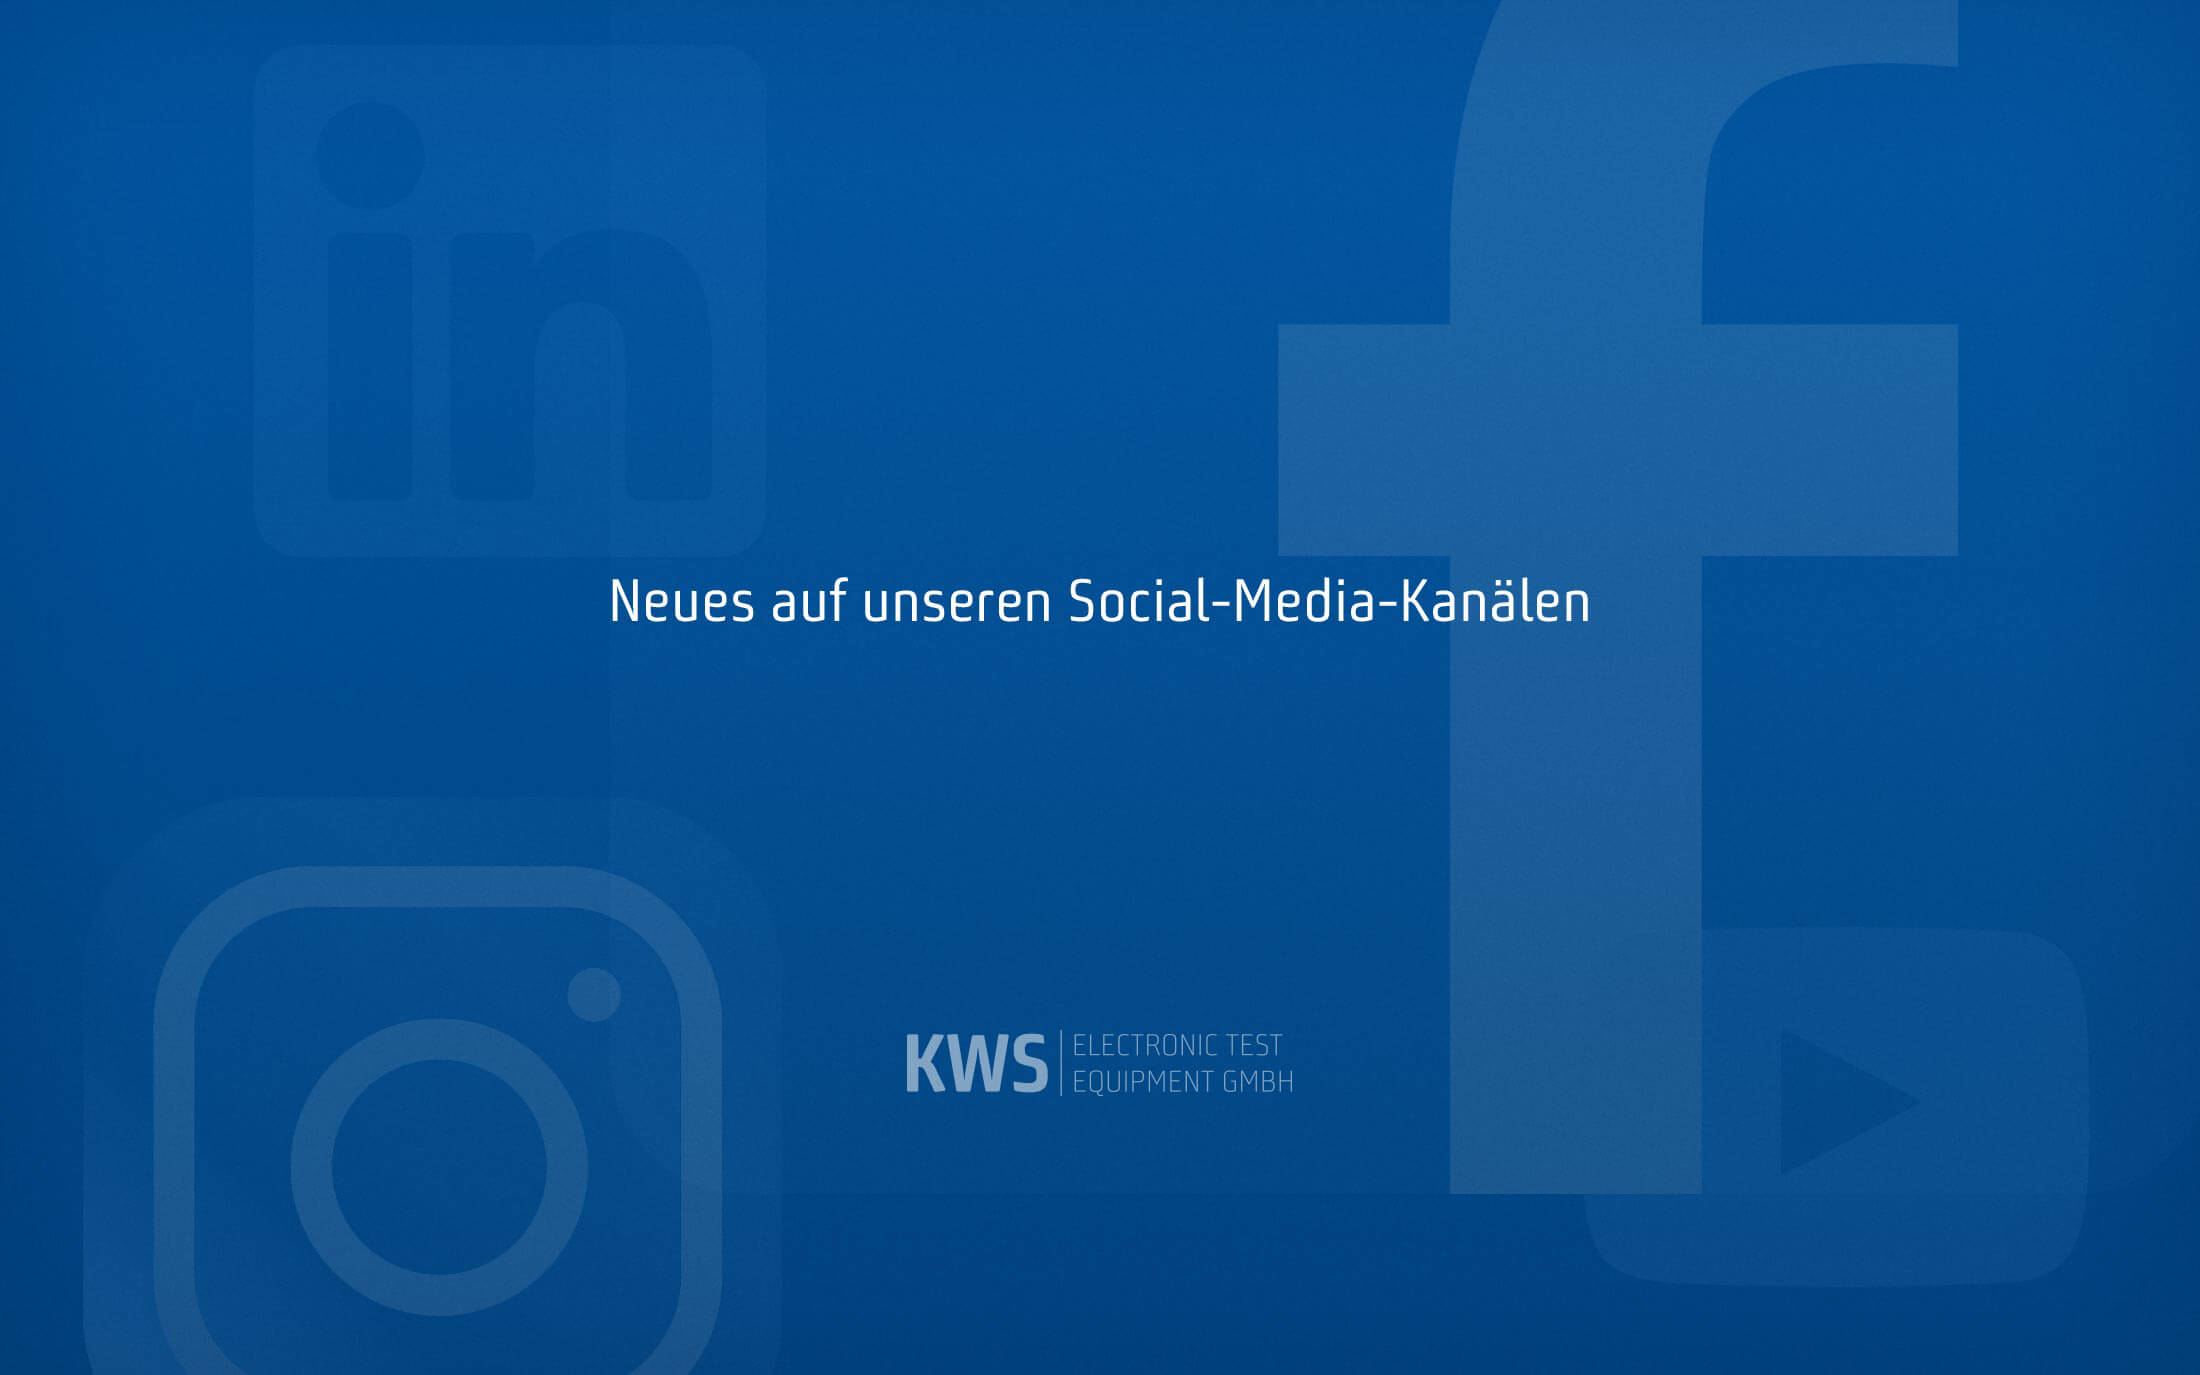 KWS Electronic News 2021: Neues auf unseren Social-Media-Kanälen